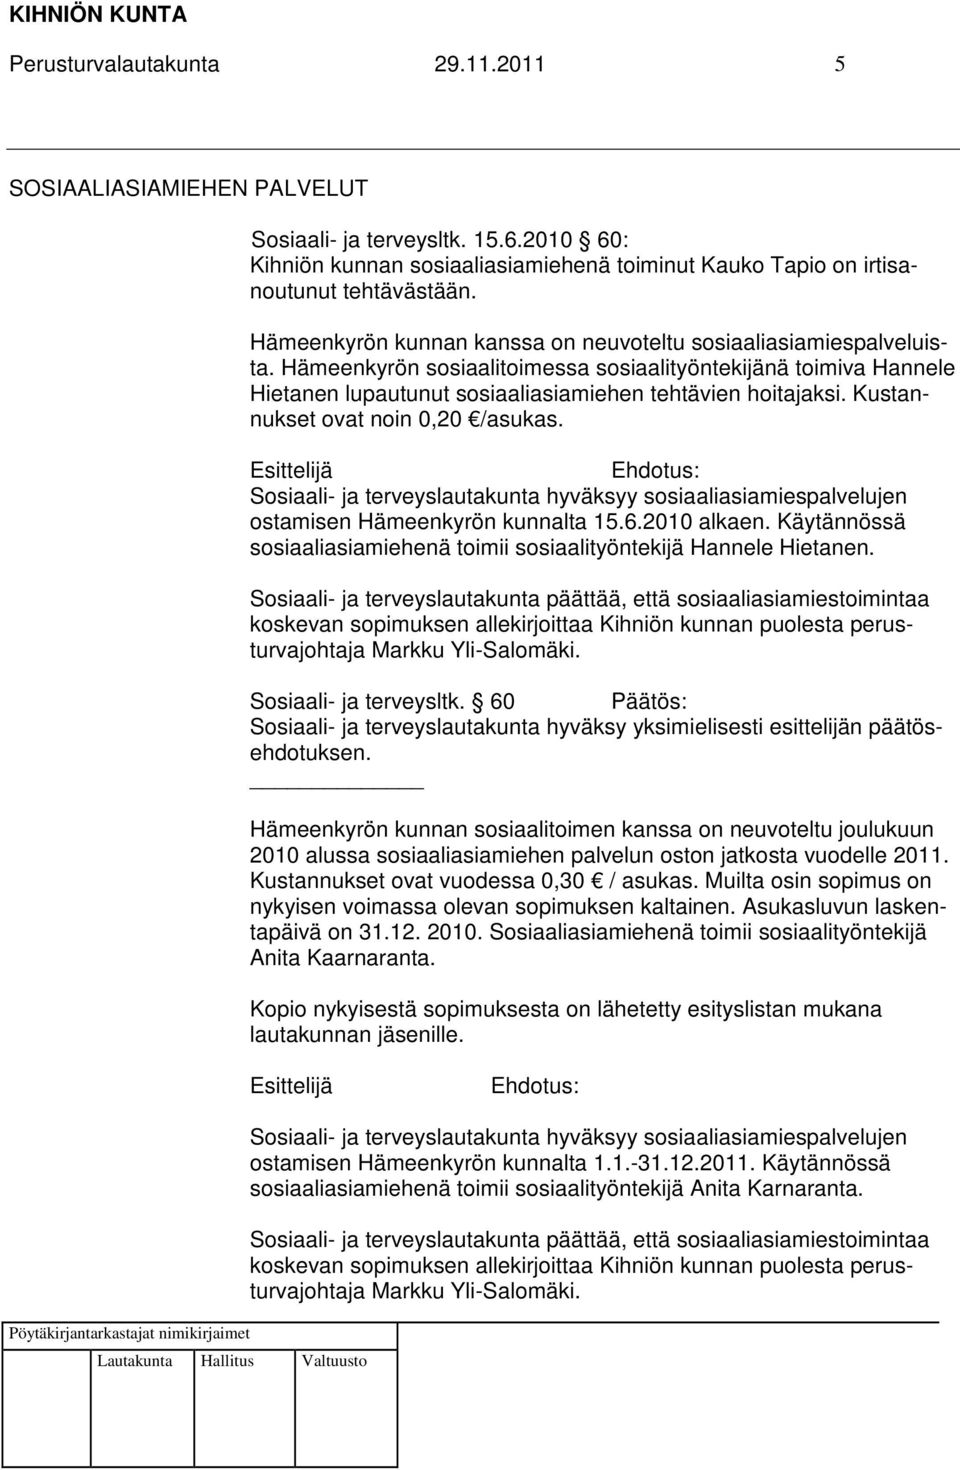 Kustannukset ovat noin 0,20 /asukas. Sosiaali- ja terveyslautakunta hyväksyy sosiaaliasiamiespalvelujen ostamisen Hämeenkyrön kunnalta 15.6.2010 alkaen.